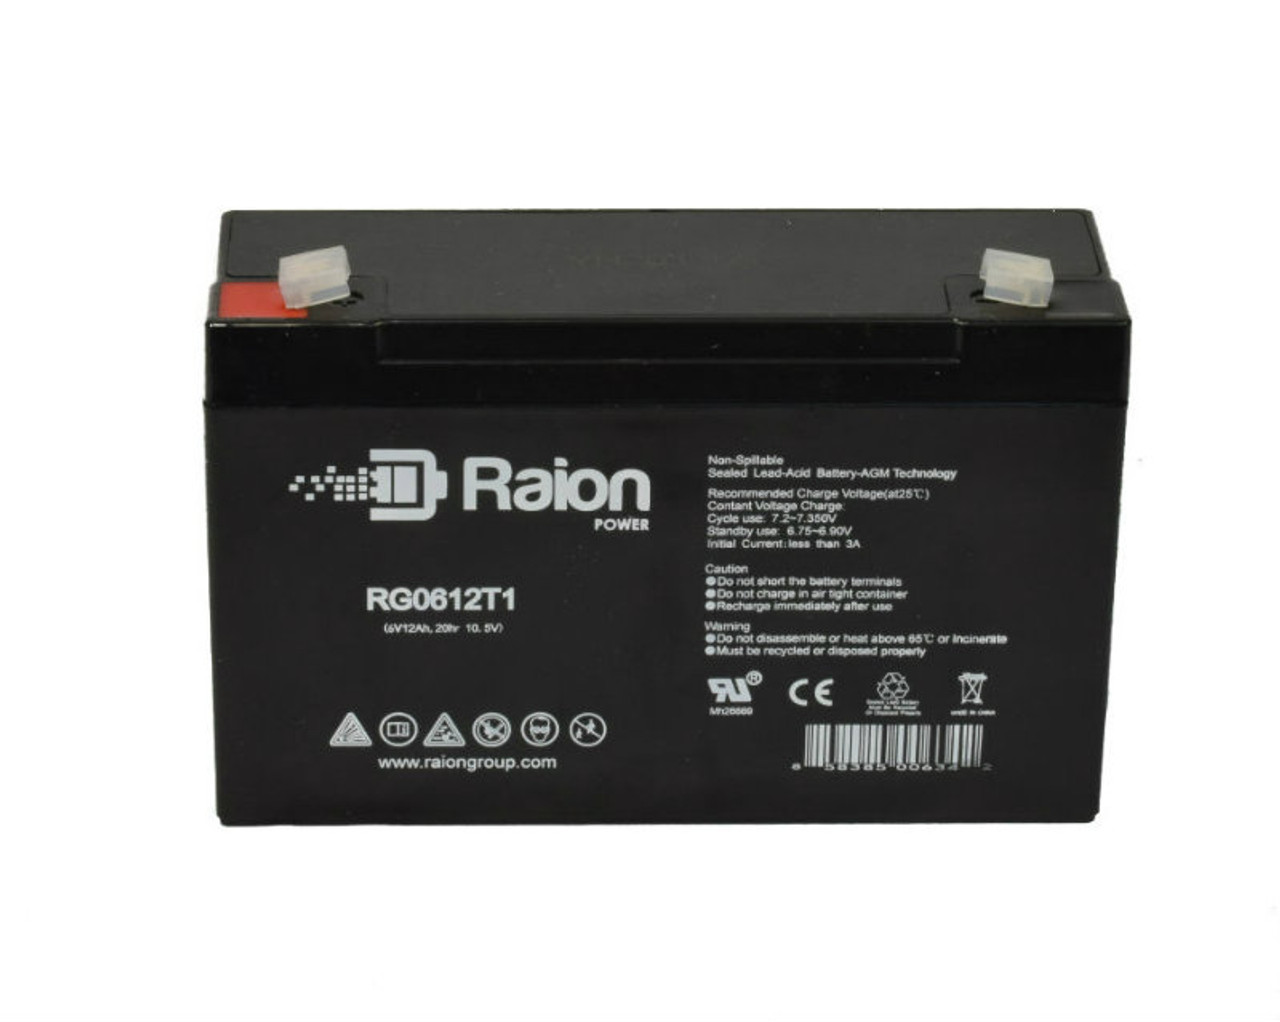 Raion Power RG06120T1 SLA Battery for Emergi-Lite 121LSM54